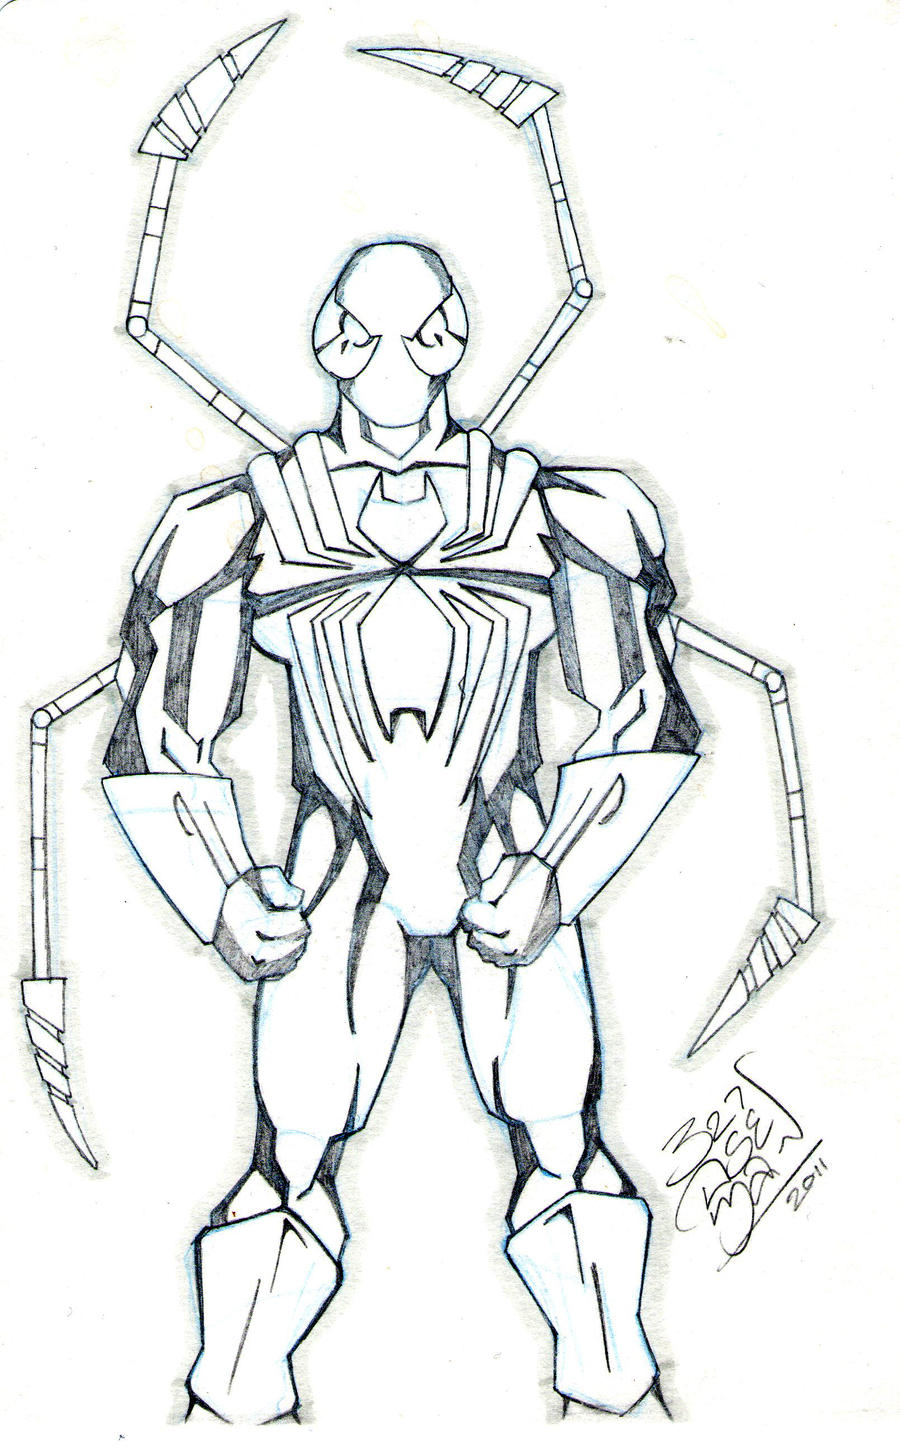 Iron Spider man sketch by LloydBridgeman on DeviantArt